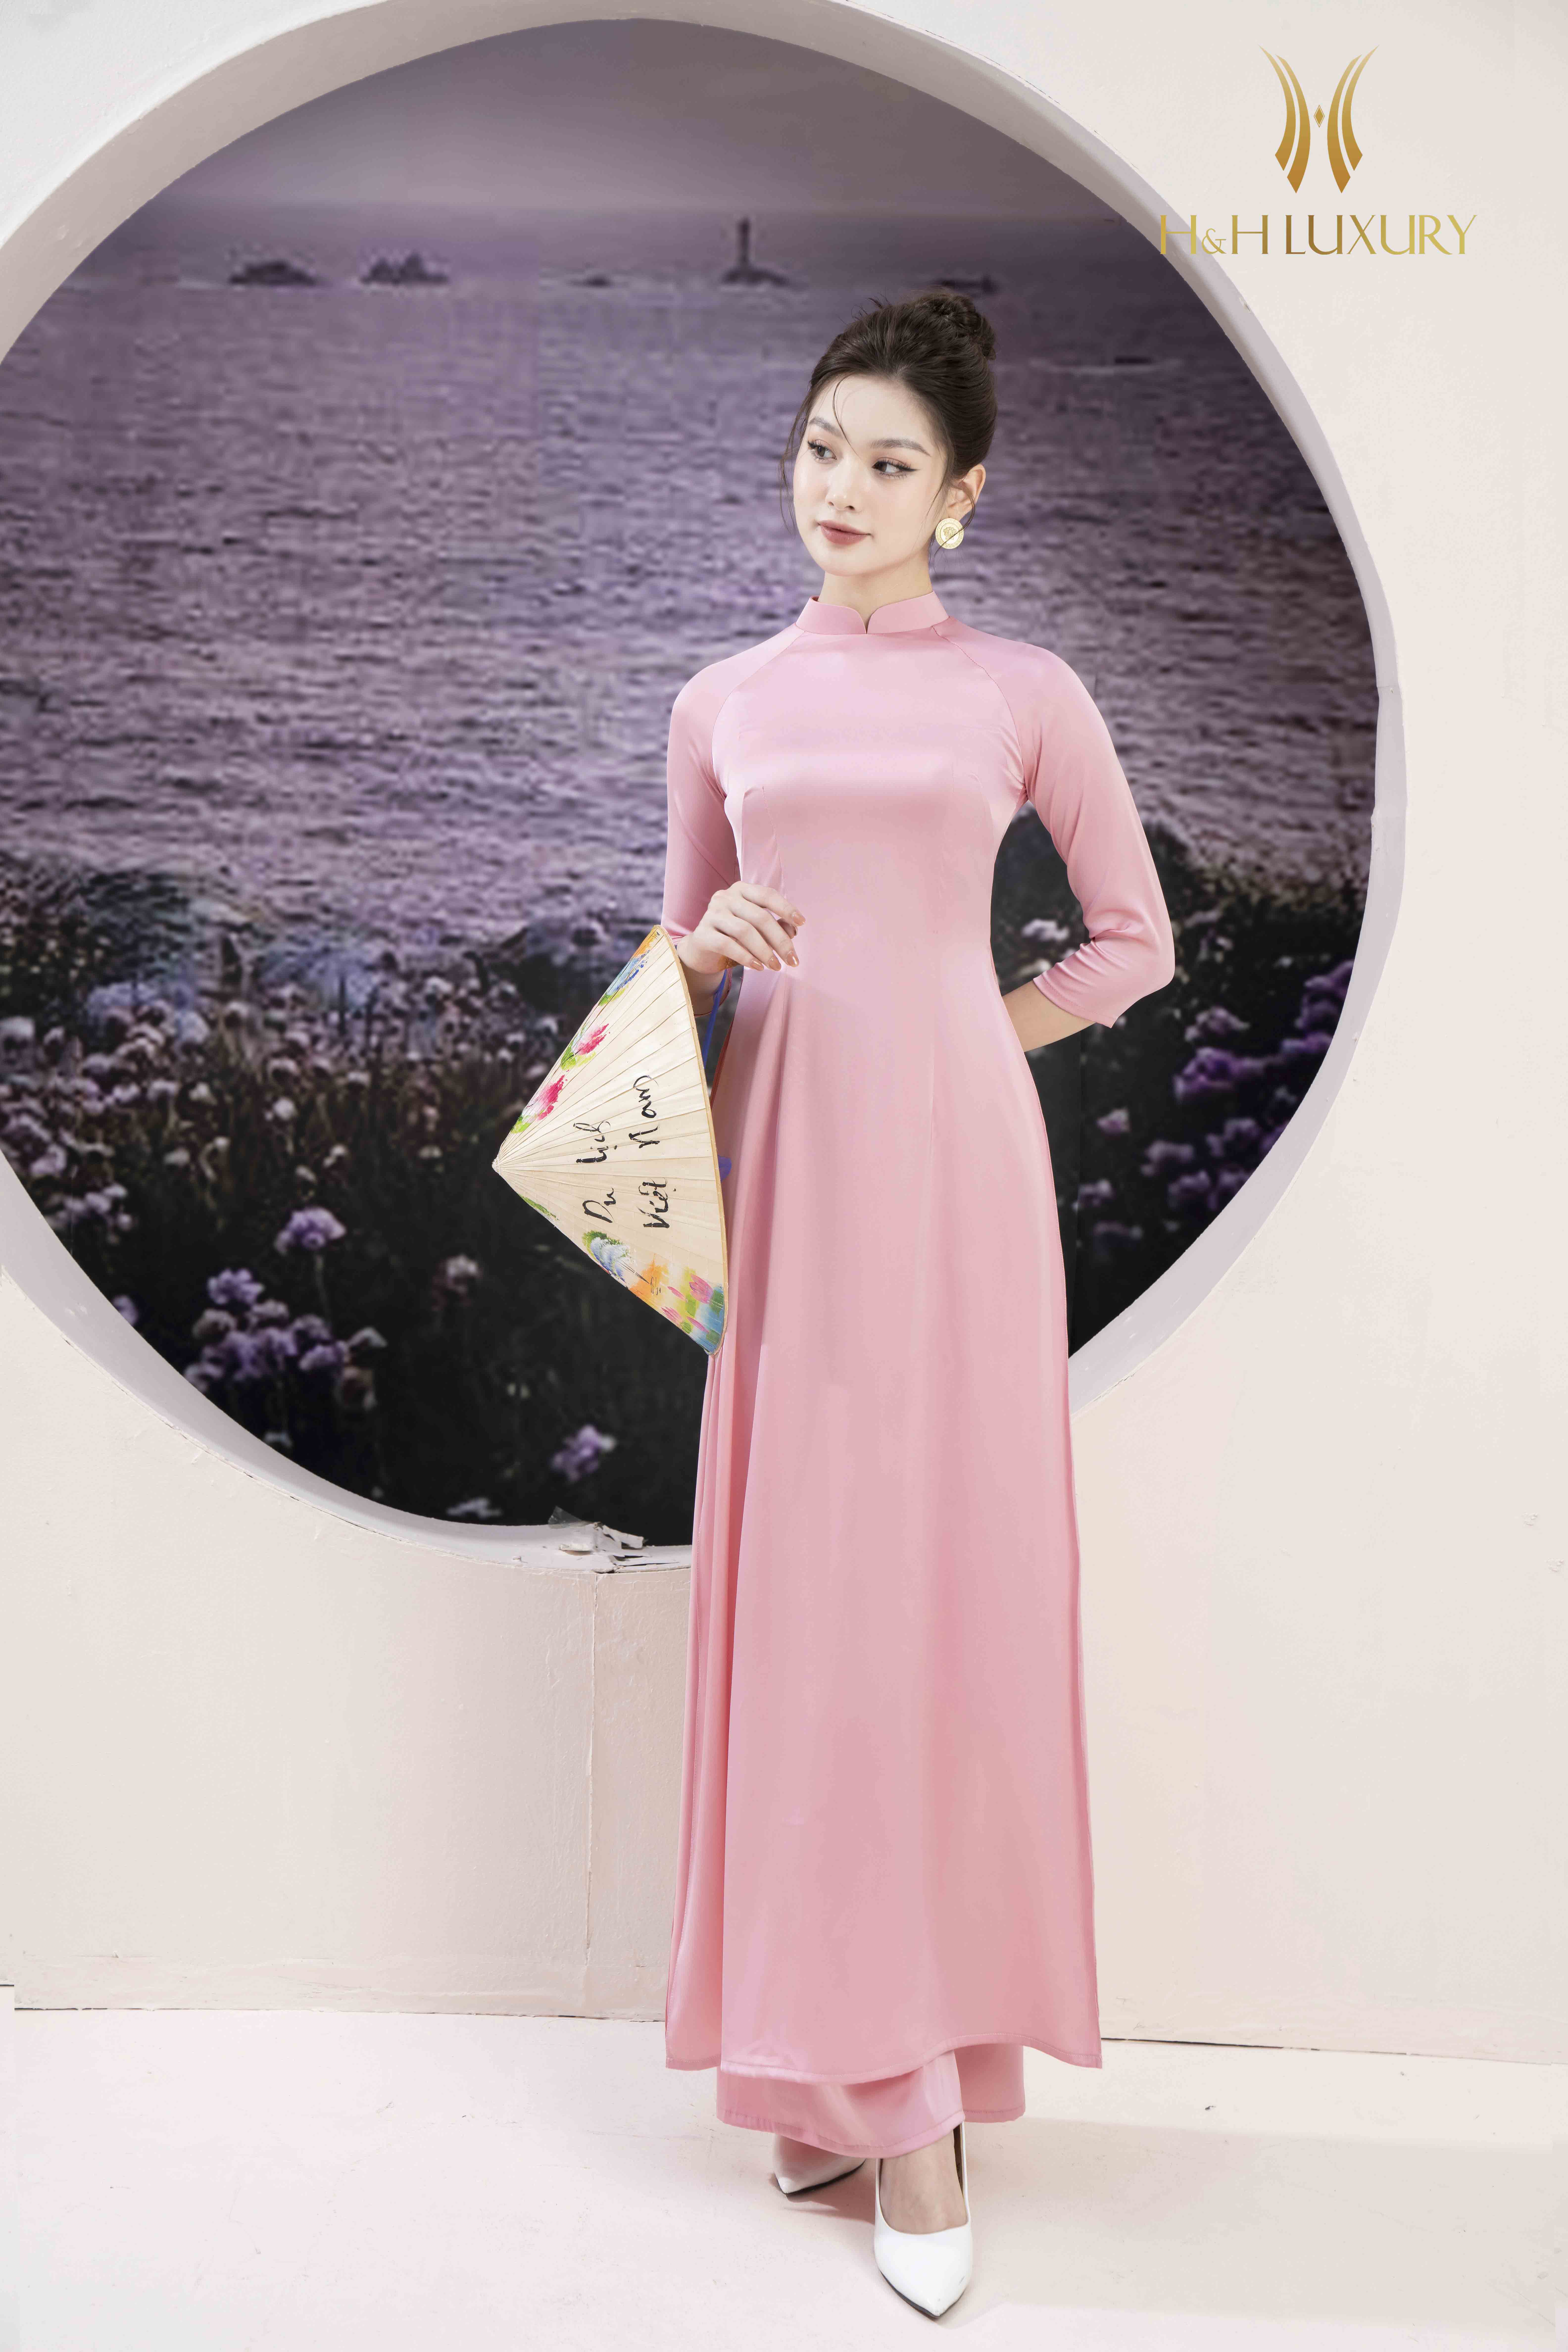 BELY | V763 - Váy đầm ôm bút chì tạo khối thiết kế pha lê eo - Hồng pastel,  Hồng đất - Bely | Thời trang cao cấp Bely